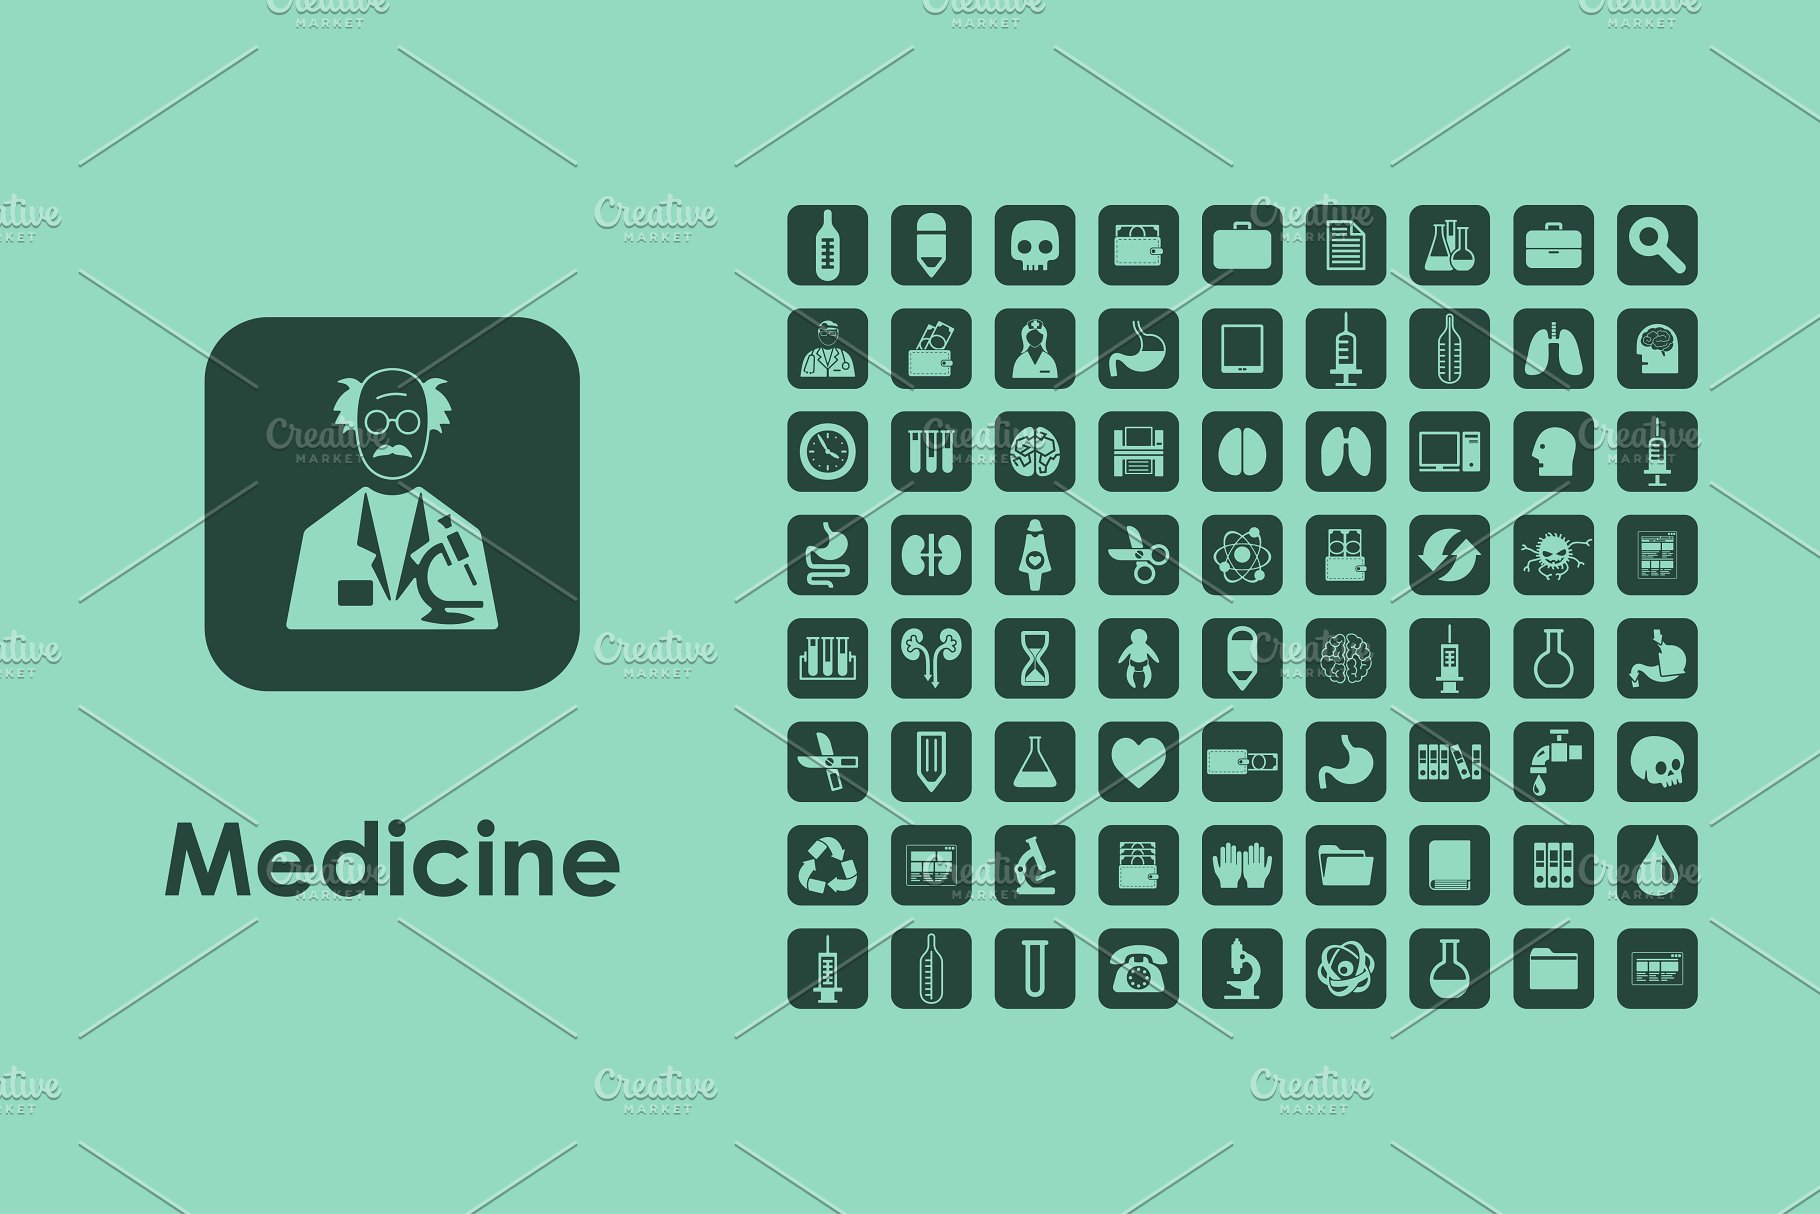 医疗医学图标下载 Medicine icons #13699